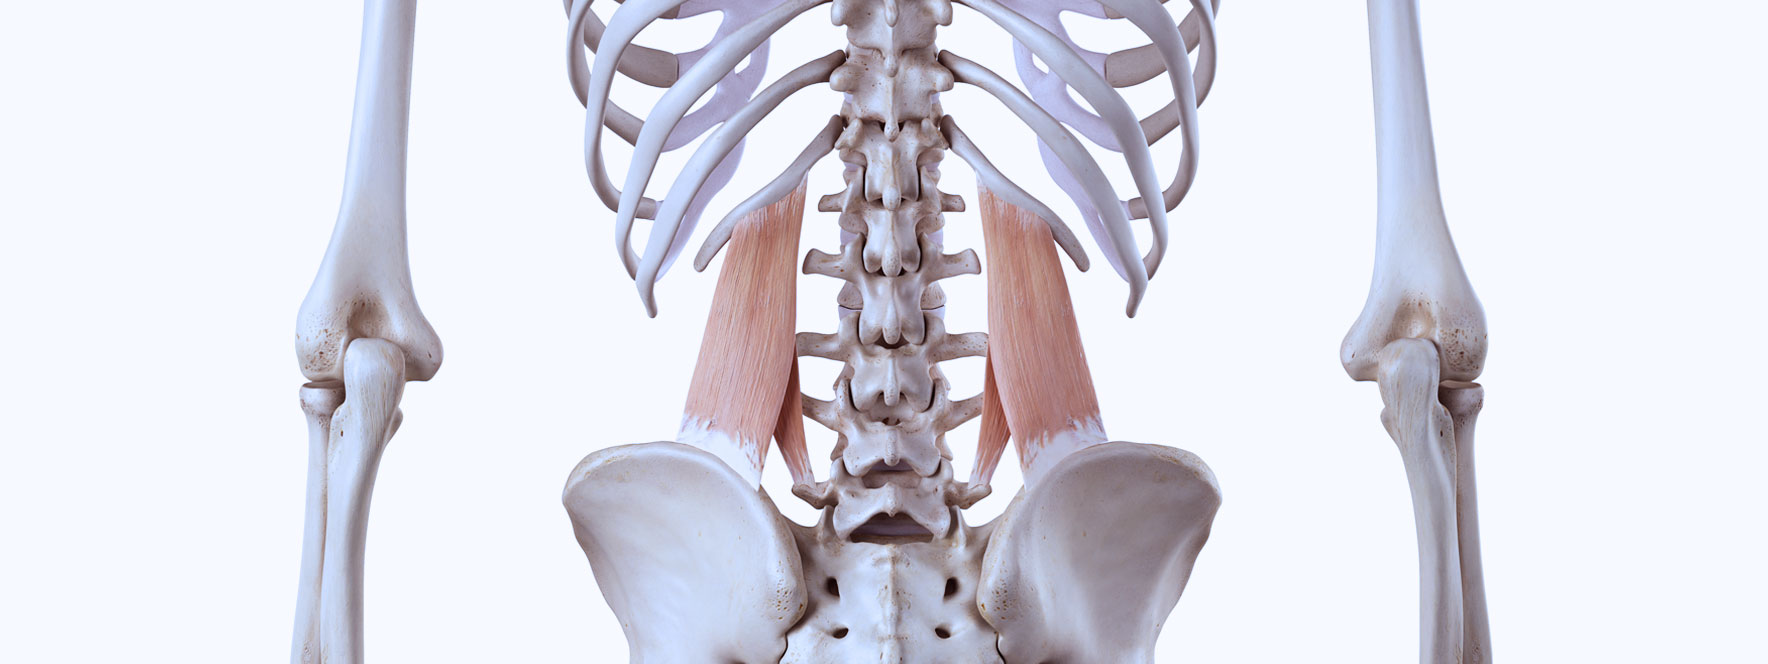 Illustration anatomie du carré des lombes, tensions musculaires